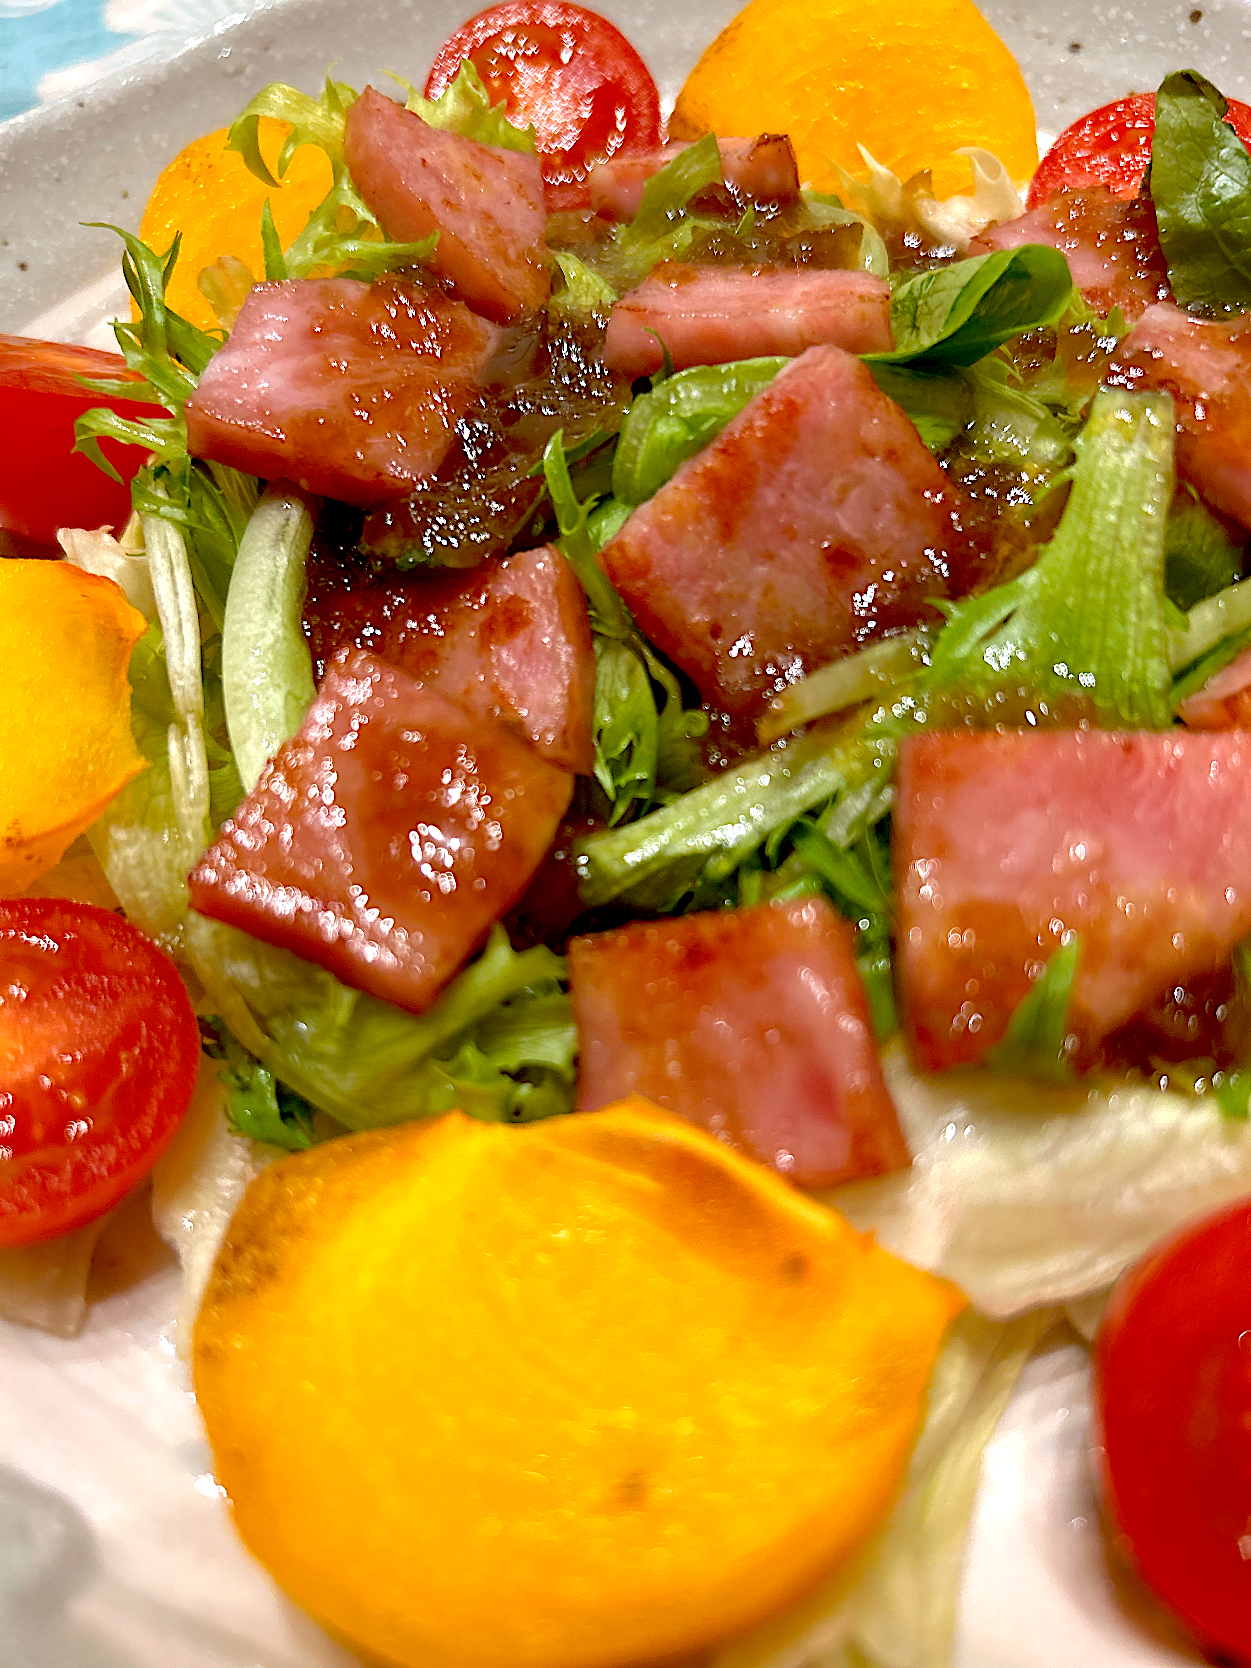 かけるだけでごちそう🥗厚切りソーセージステーキと柿のサラダ